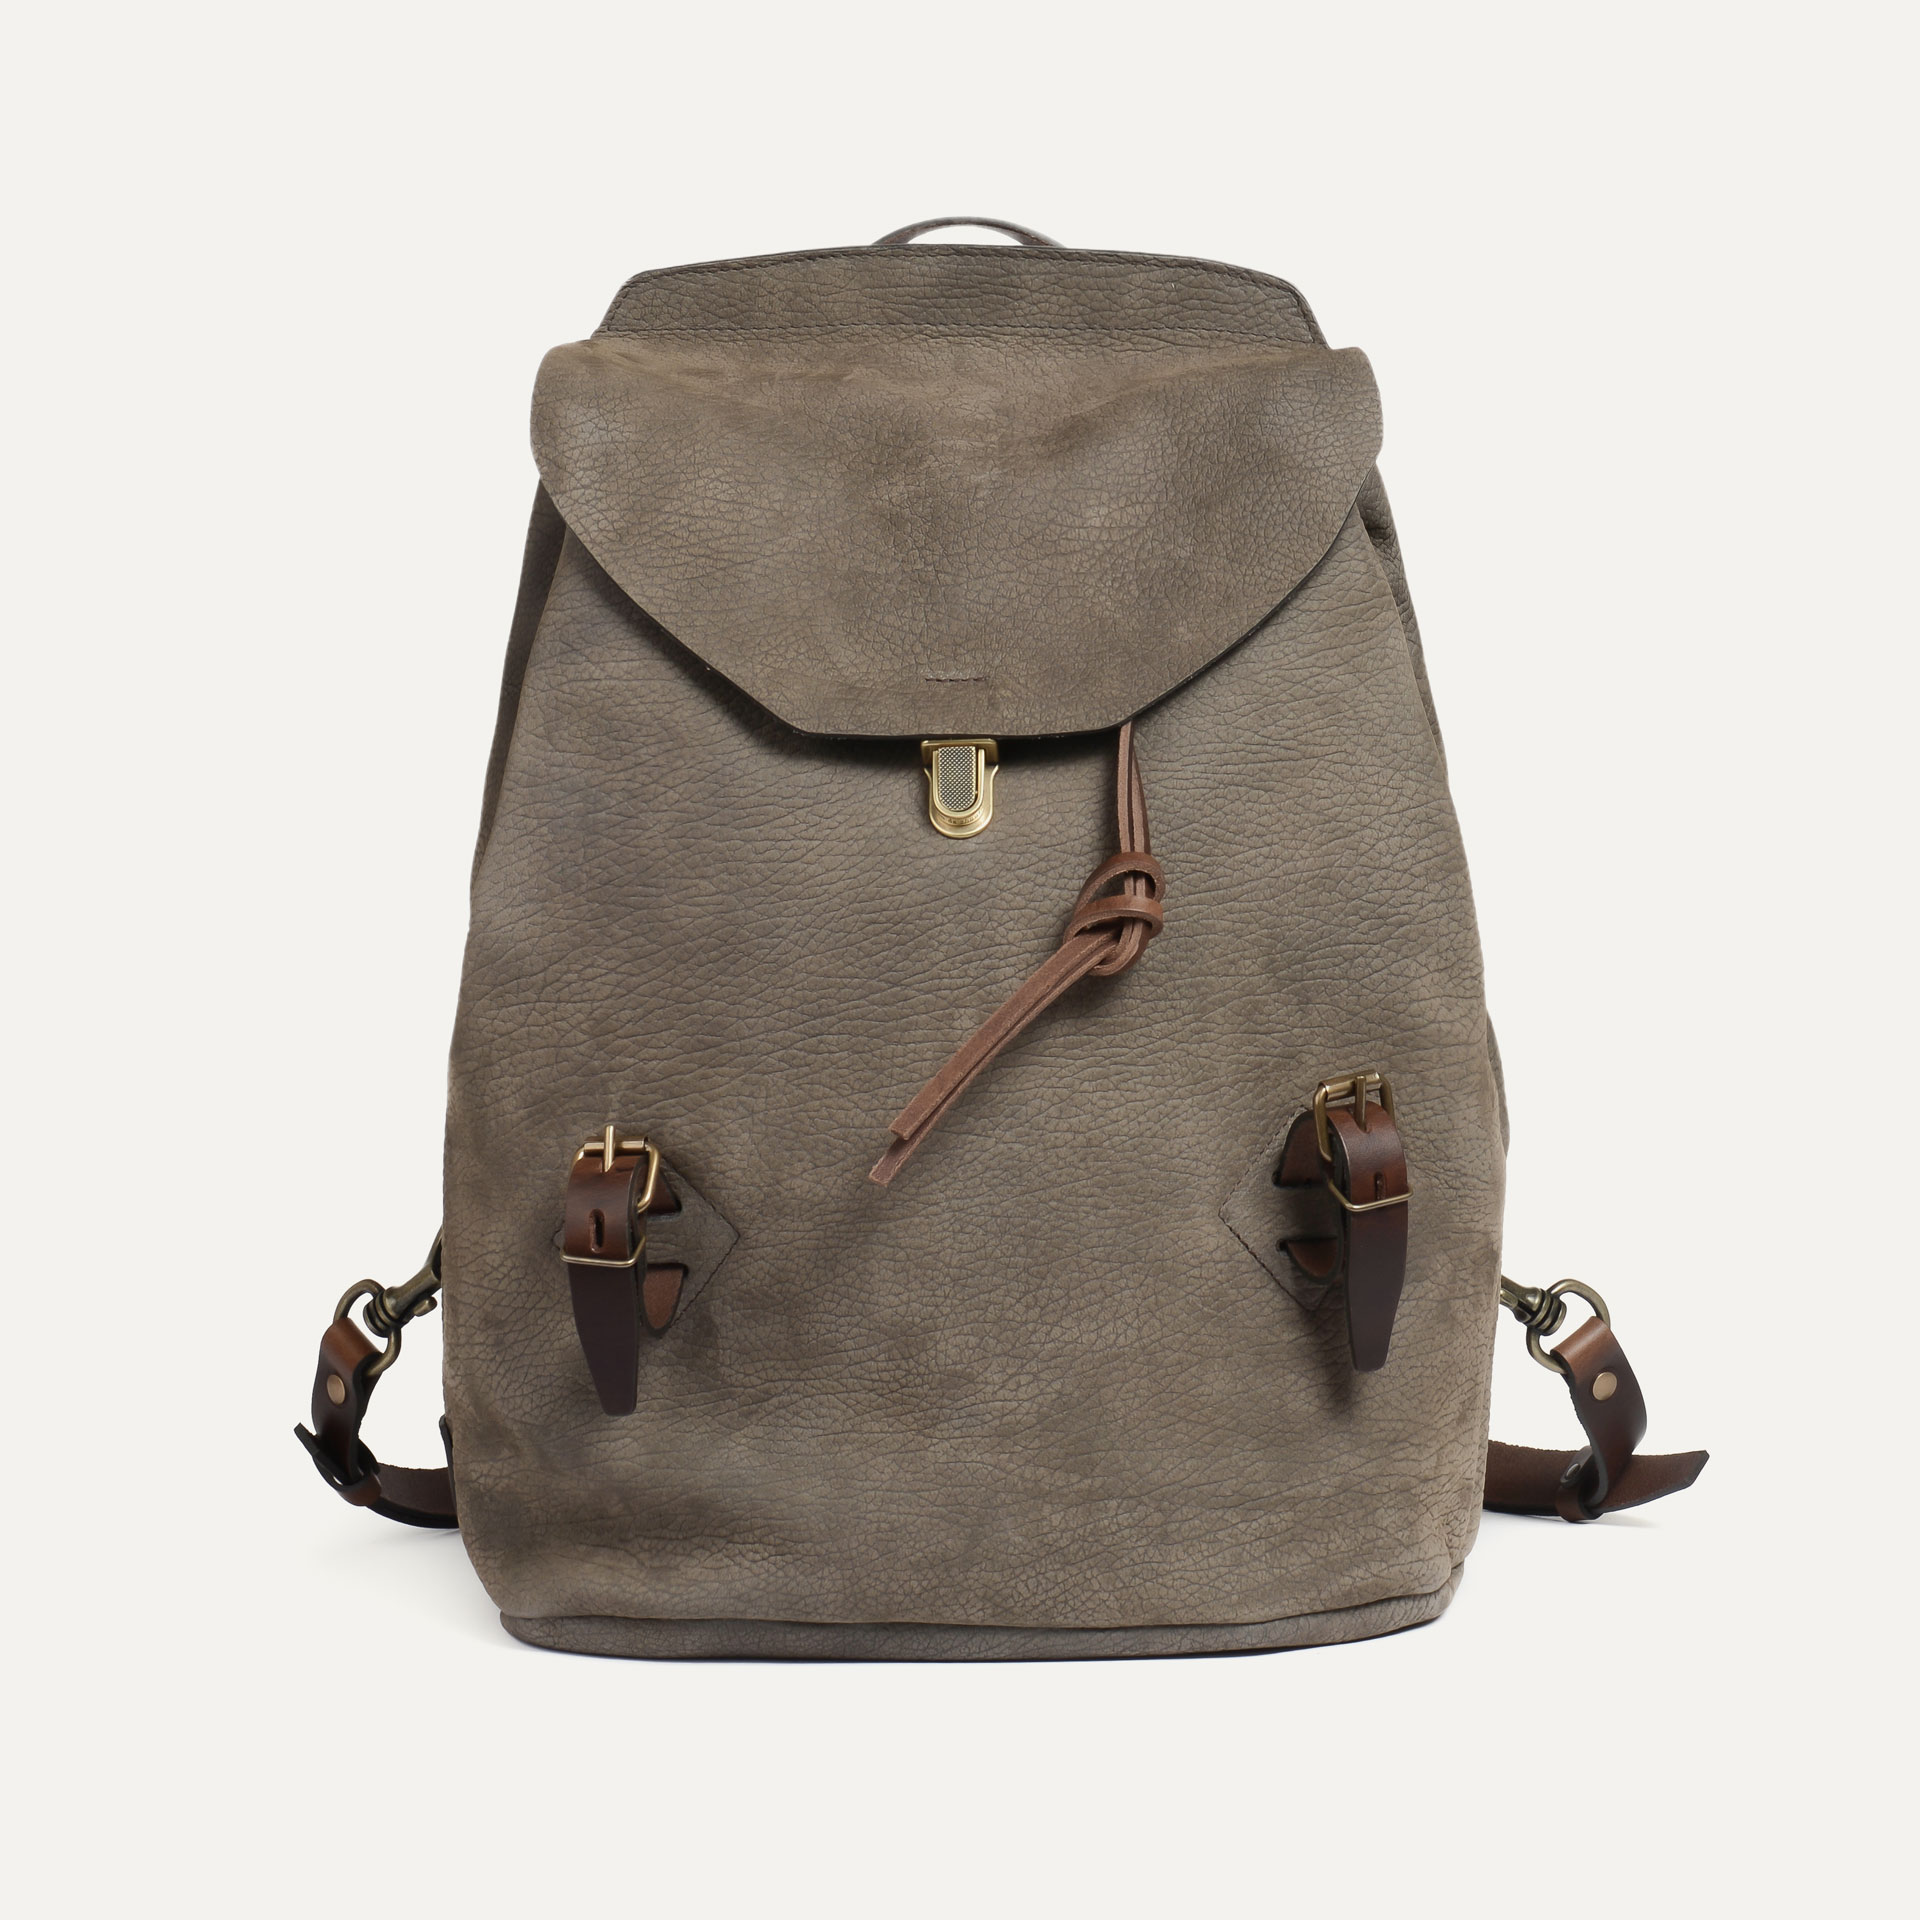 Zibeline leather backpack